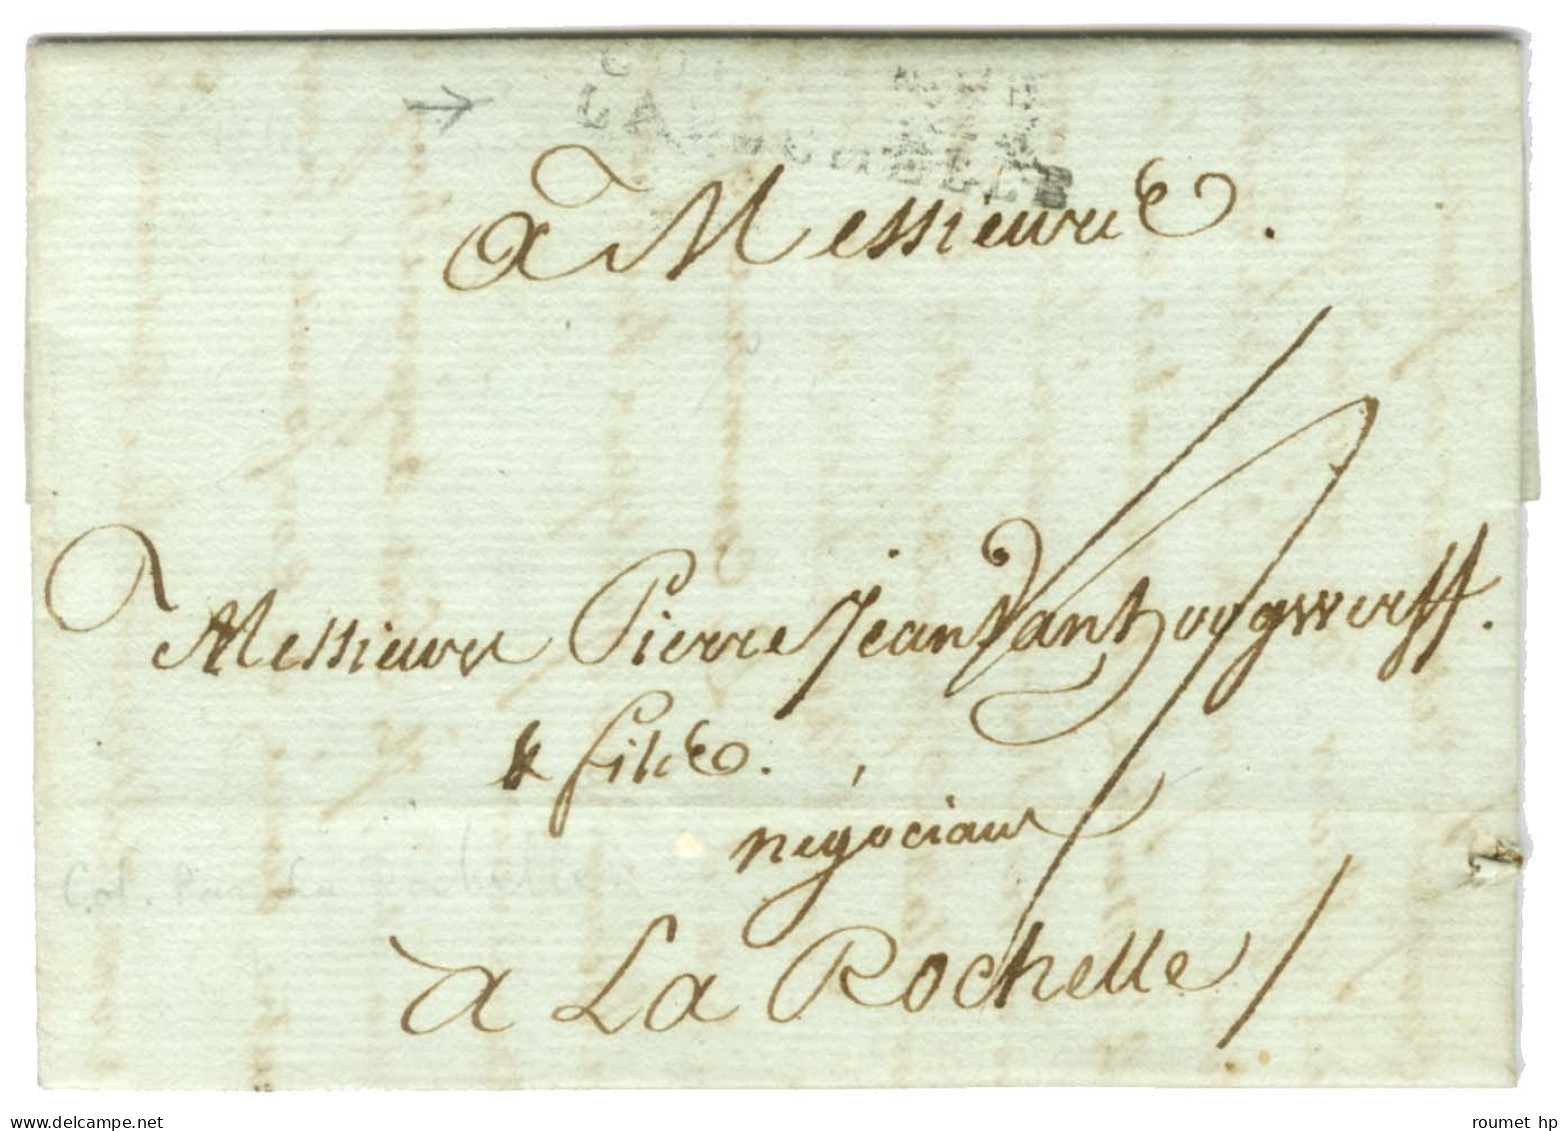 Lettre Avec Très Bon Texte Daté De Port Au Prince Le 12 Octobre 1790 Pour La Rochelle. Au Recto, Marque Postale D'entrée - Marques D'entrées